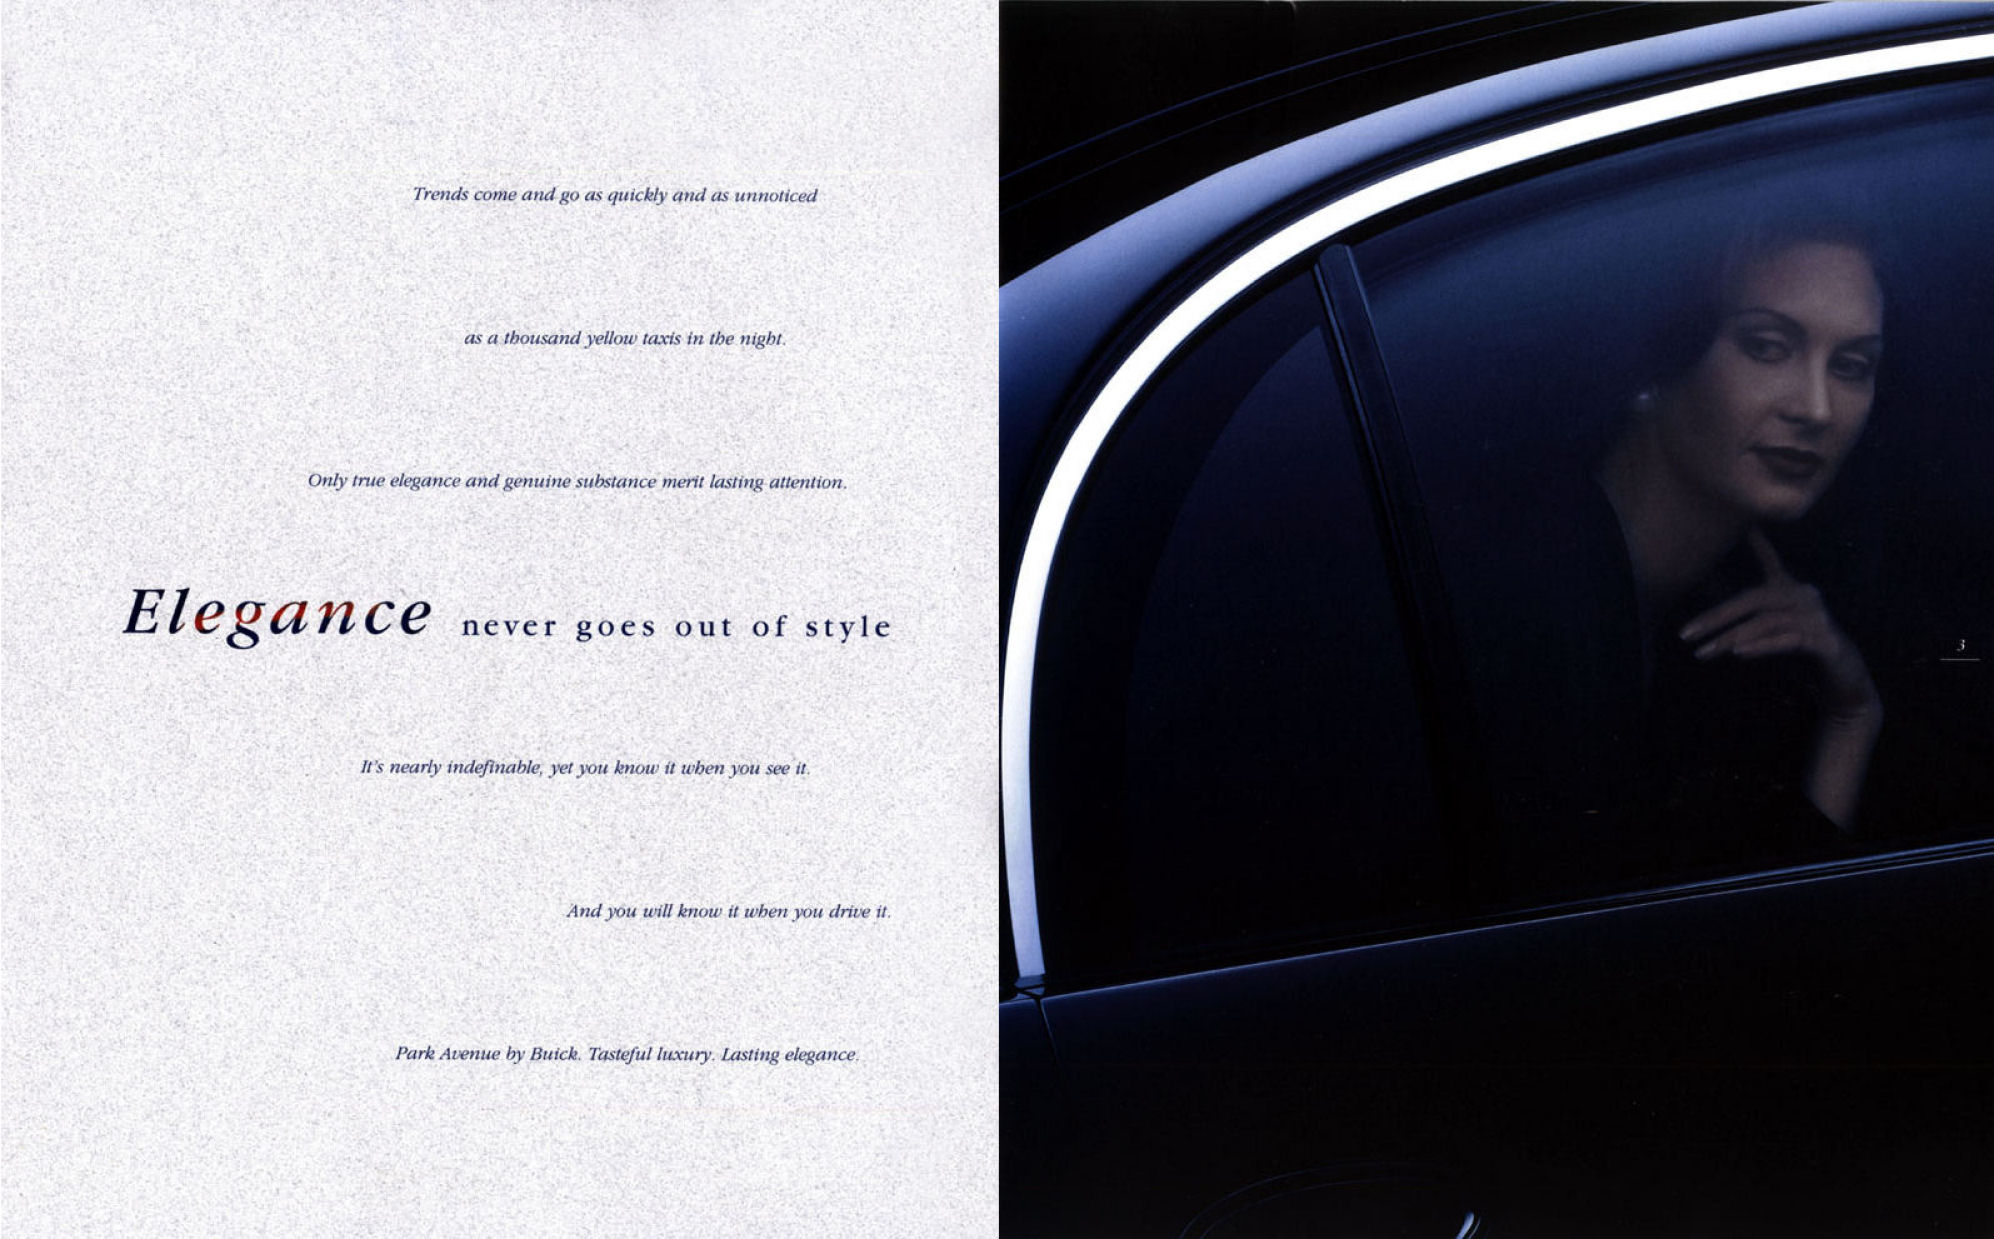 1999 Buick Park Avenue Prestige-02-03